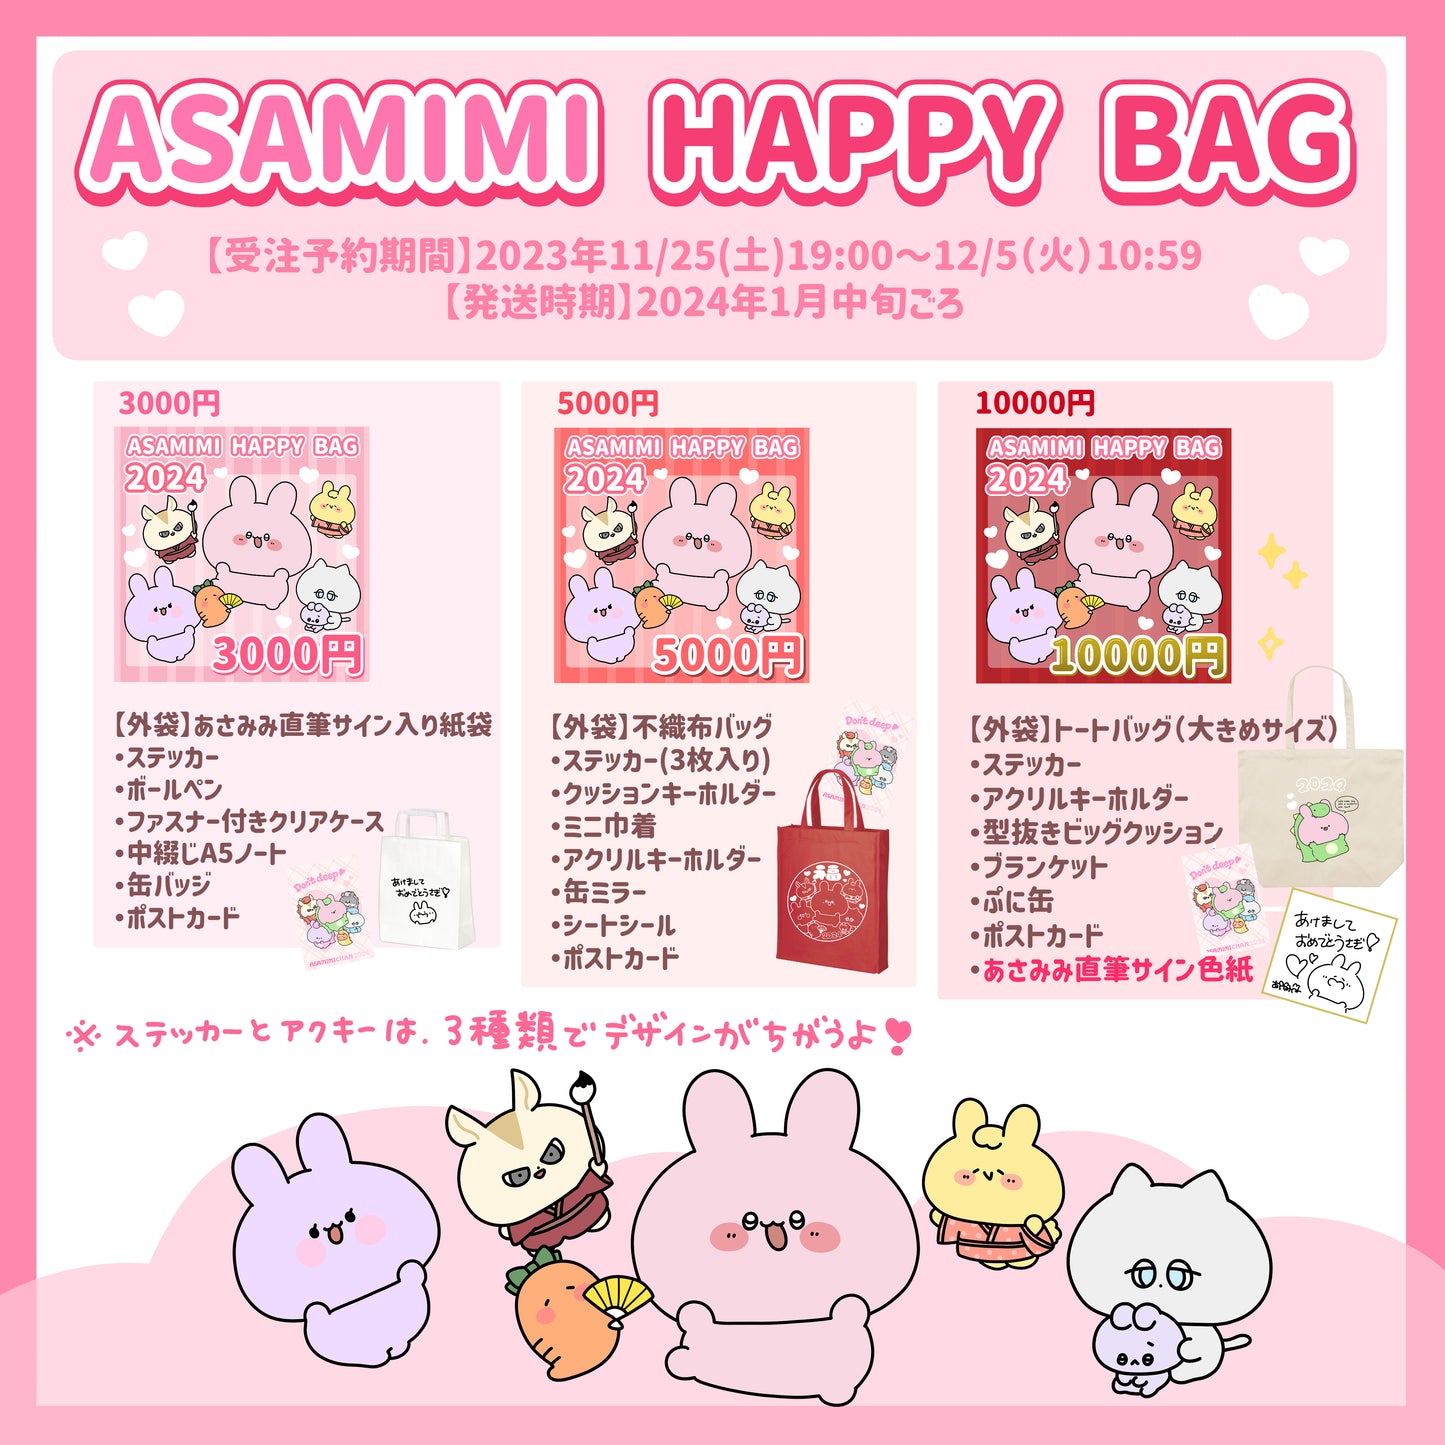 [Asamimi-chan] ASAMIMI HAPPY BAG 2024 (¥5,000) [Shipped in mid-January]